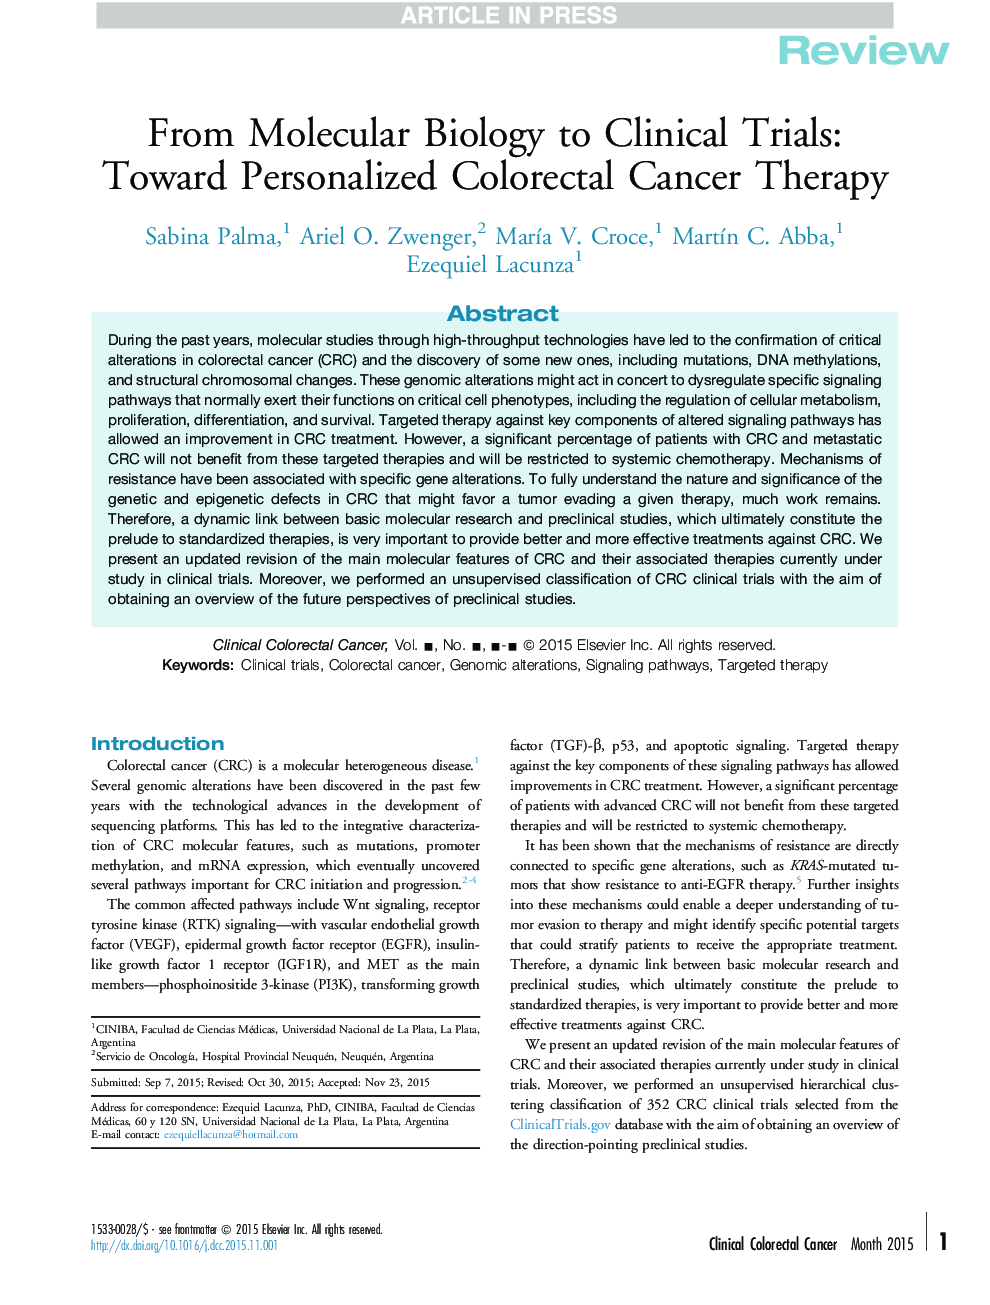 از بیولوژی مولکولی تا آزمایشات بالینی: به سمت درمان فرد سرطان کولورکتال شخصی 